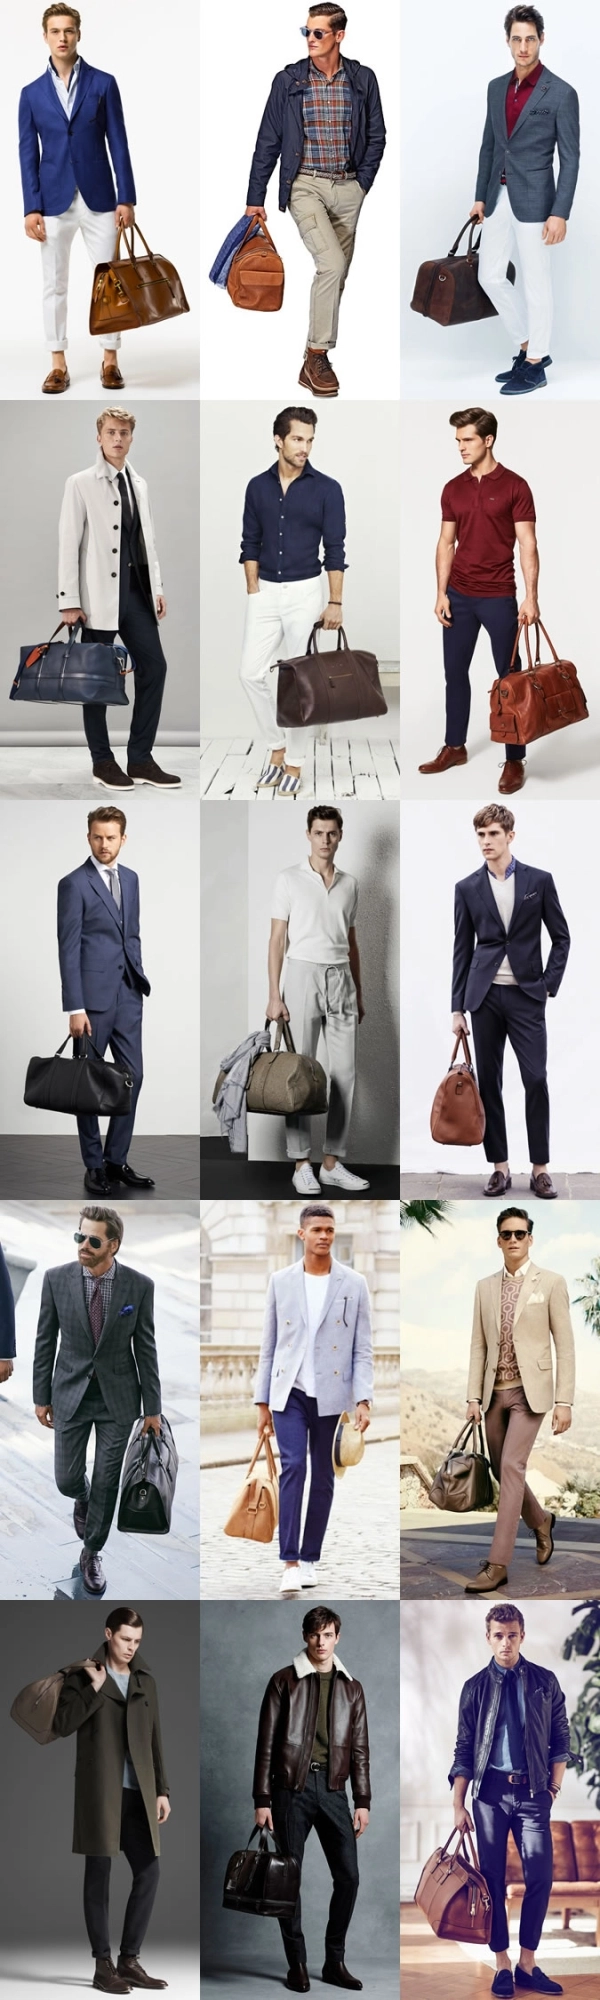 4 phụ kiện thời trang giúp nam giới trở nên lịch lãm hơn - 2